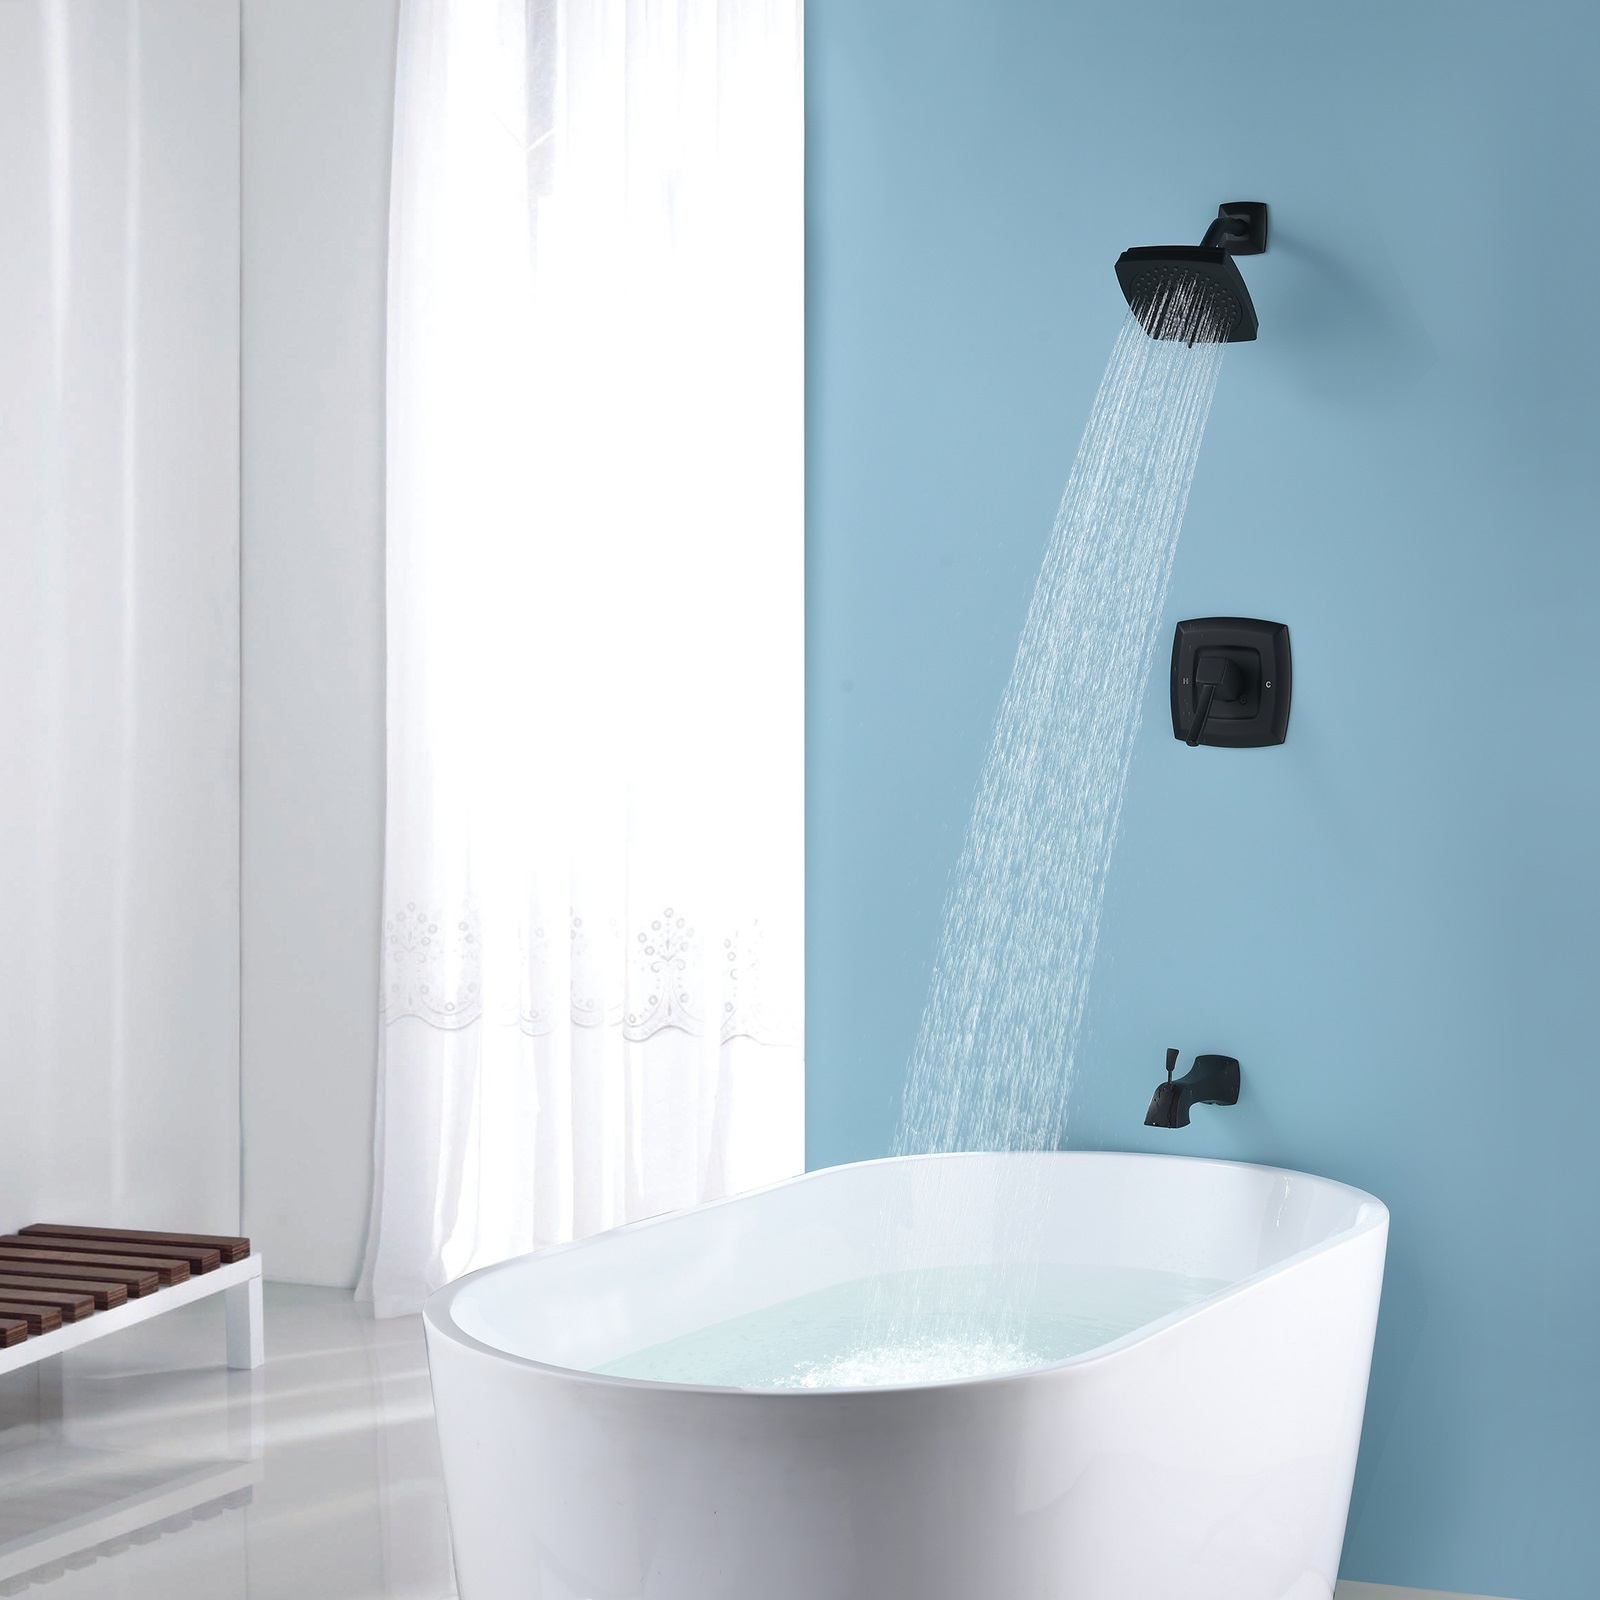 Black Shower Mixer Faucets Upc Black Faucet Bathroom Parts Shower Tap Set Square Shower Faucet